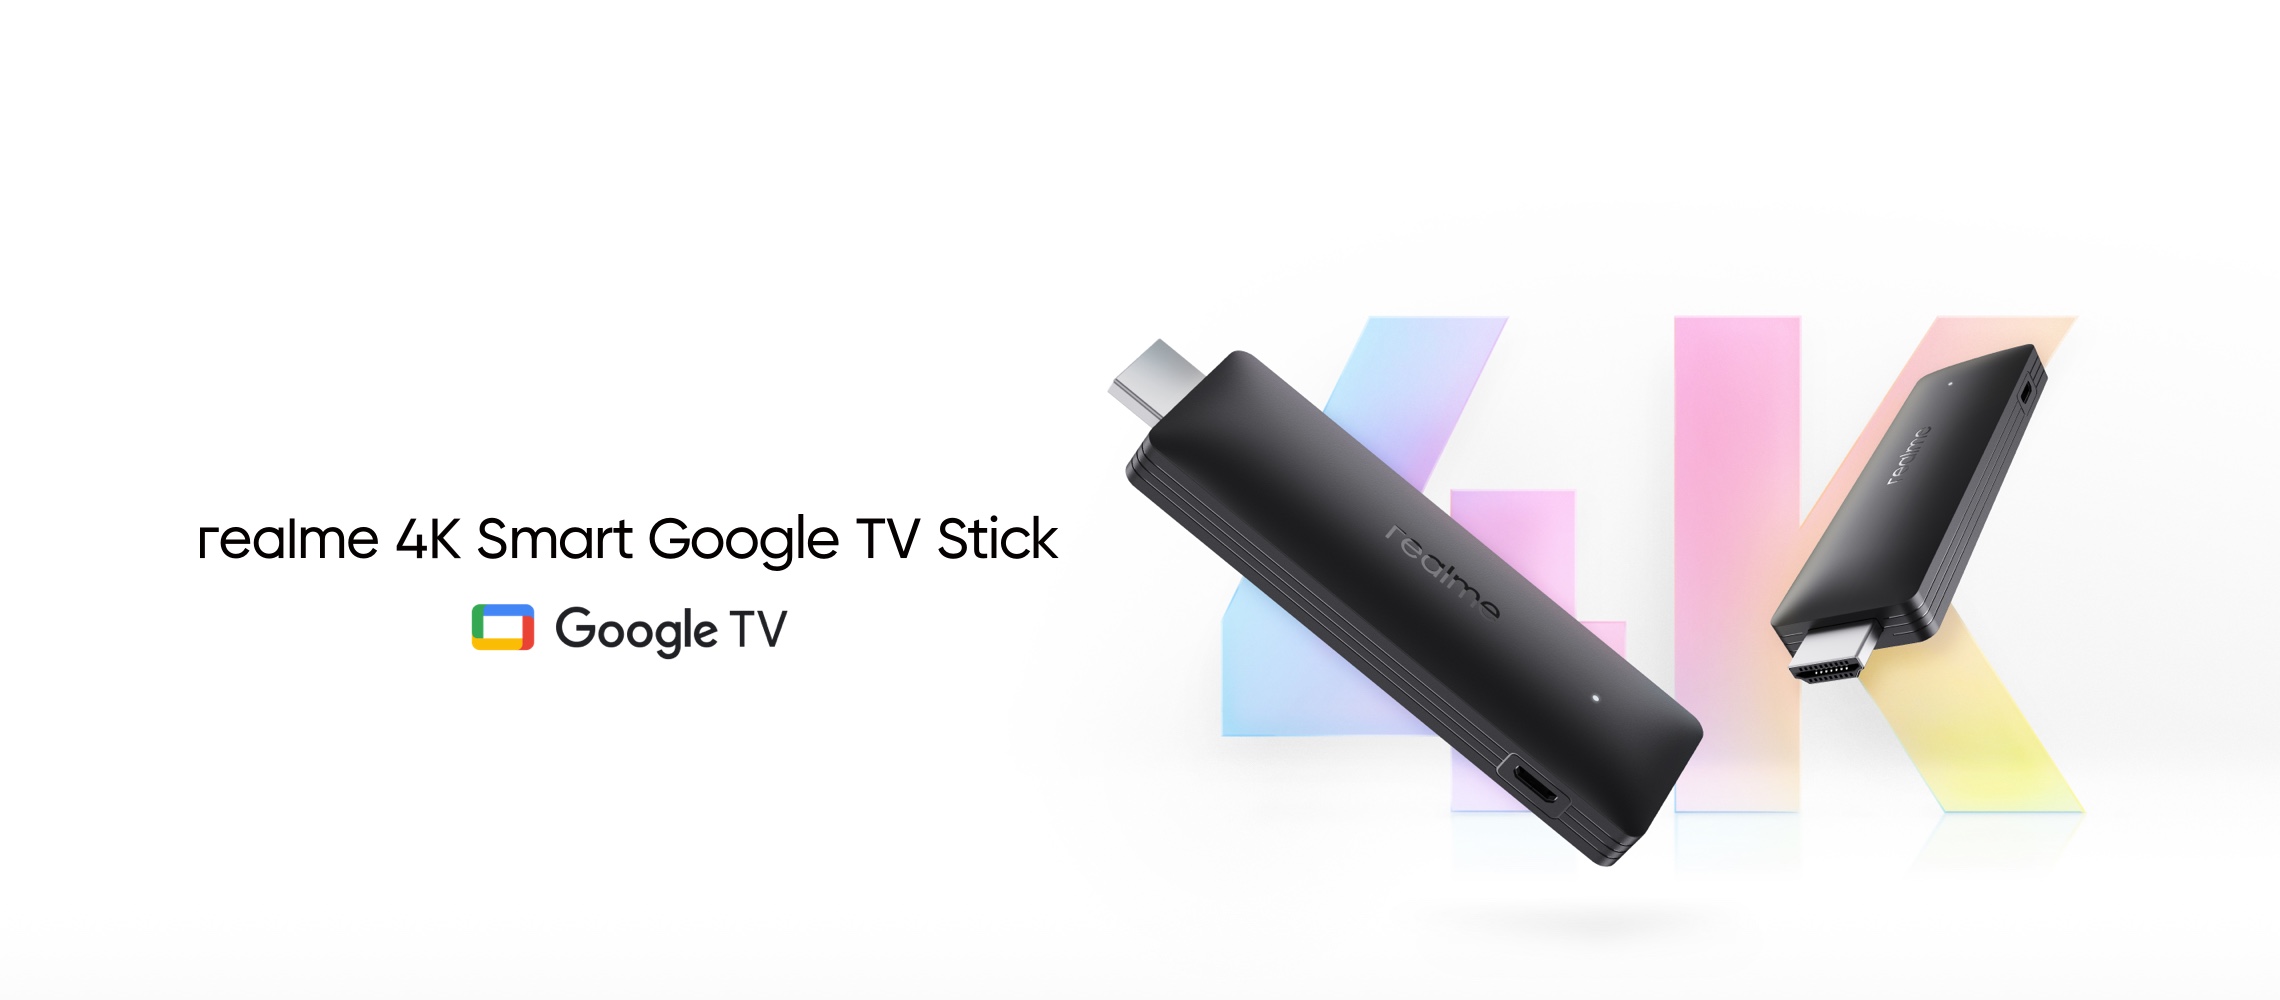 Realme 4K Smart Google TV Stick: Stick-style set-top box z 2GB pamięci RAM, czterordzeniowy układ i Google TV na pokładzie za 53 dolarów